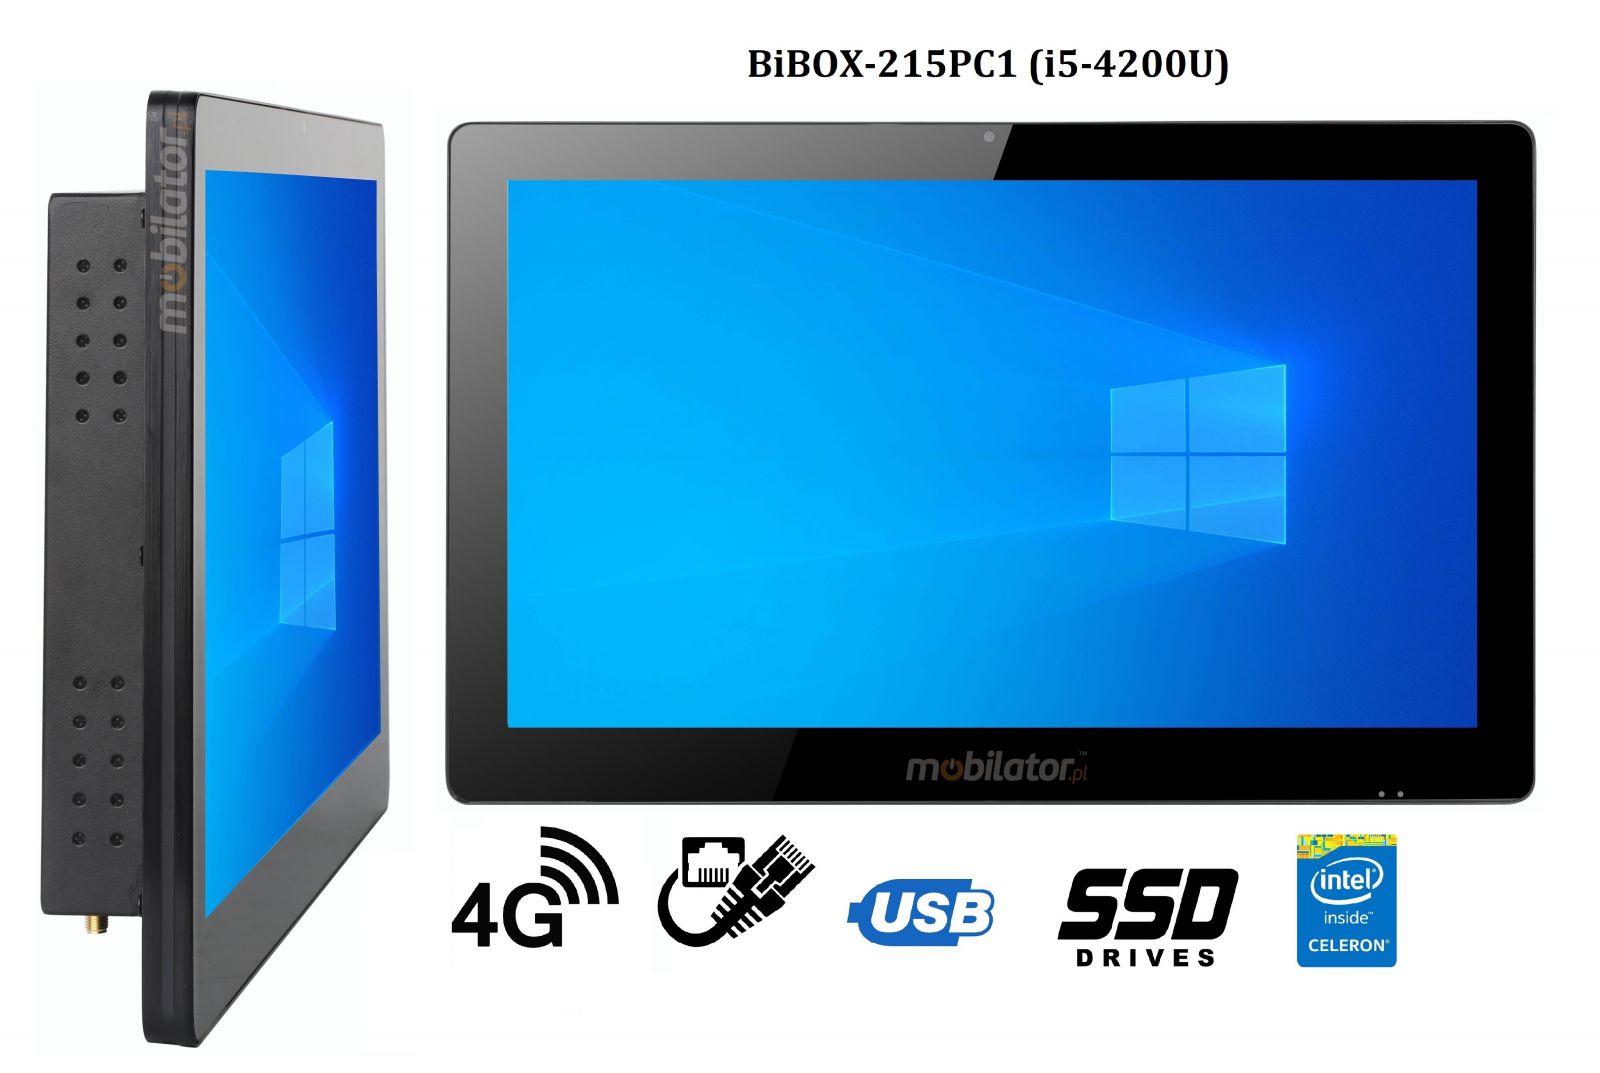 BiBOX-215PC1 (i5-4200U) v.5 - Wzmocniony panel komputerowy z IP65 (odporno woda i py) z dyskiem SSD 256 GB, technologi 4G oraz WiFi